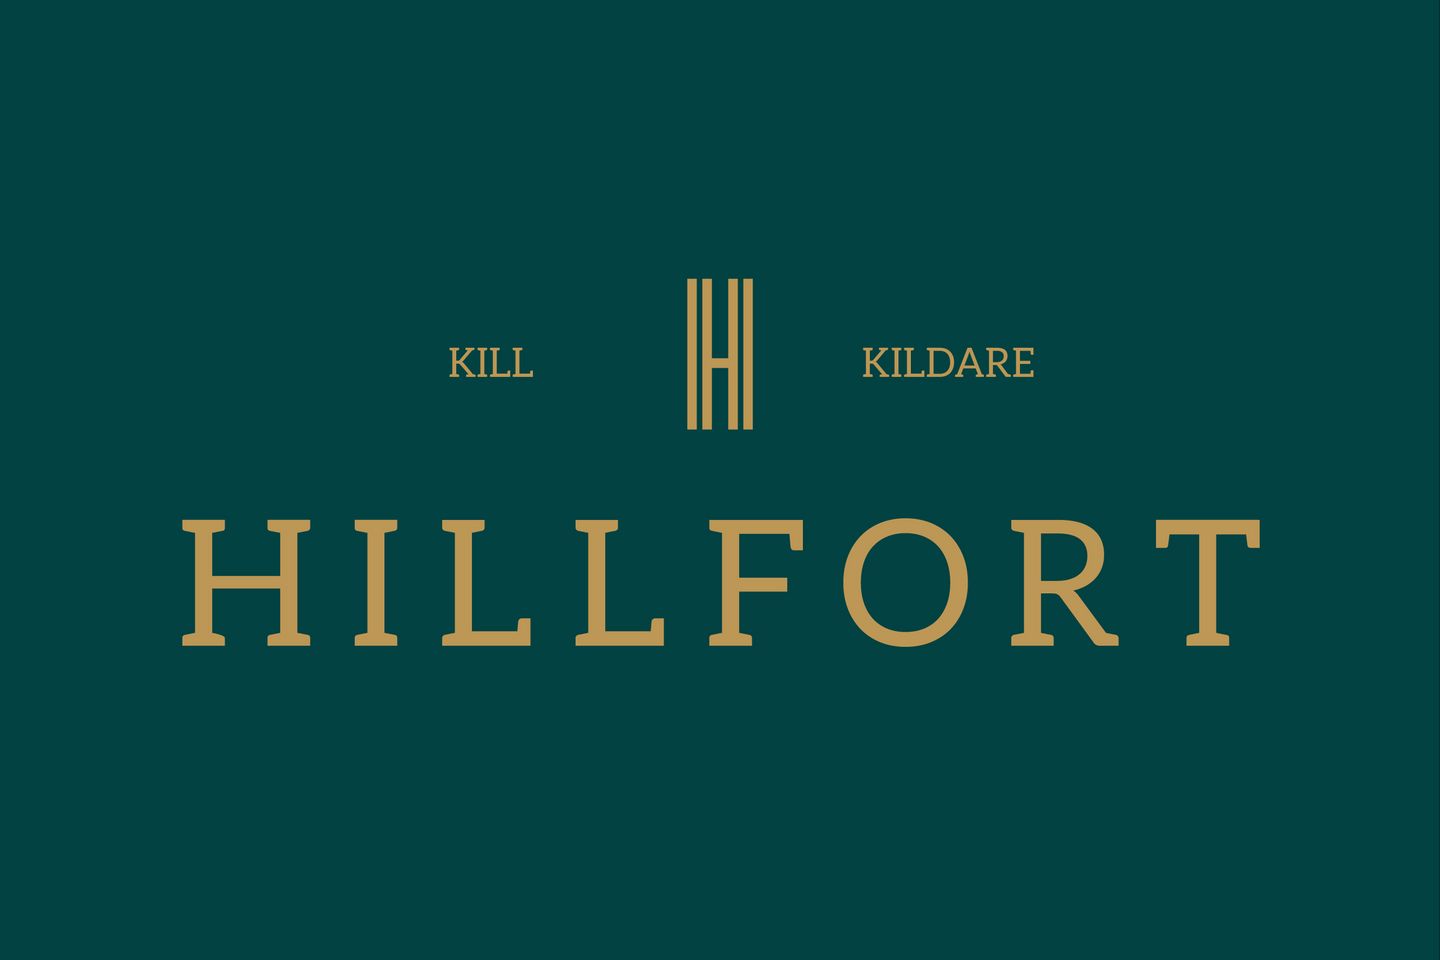 THE CEDAR, Hillfort, Hillfort, Kill, Co. Kildare